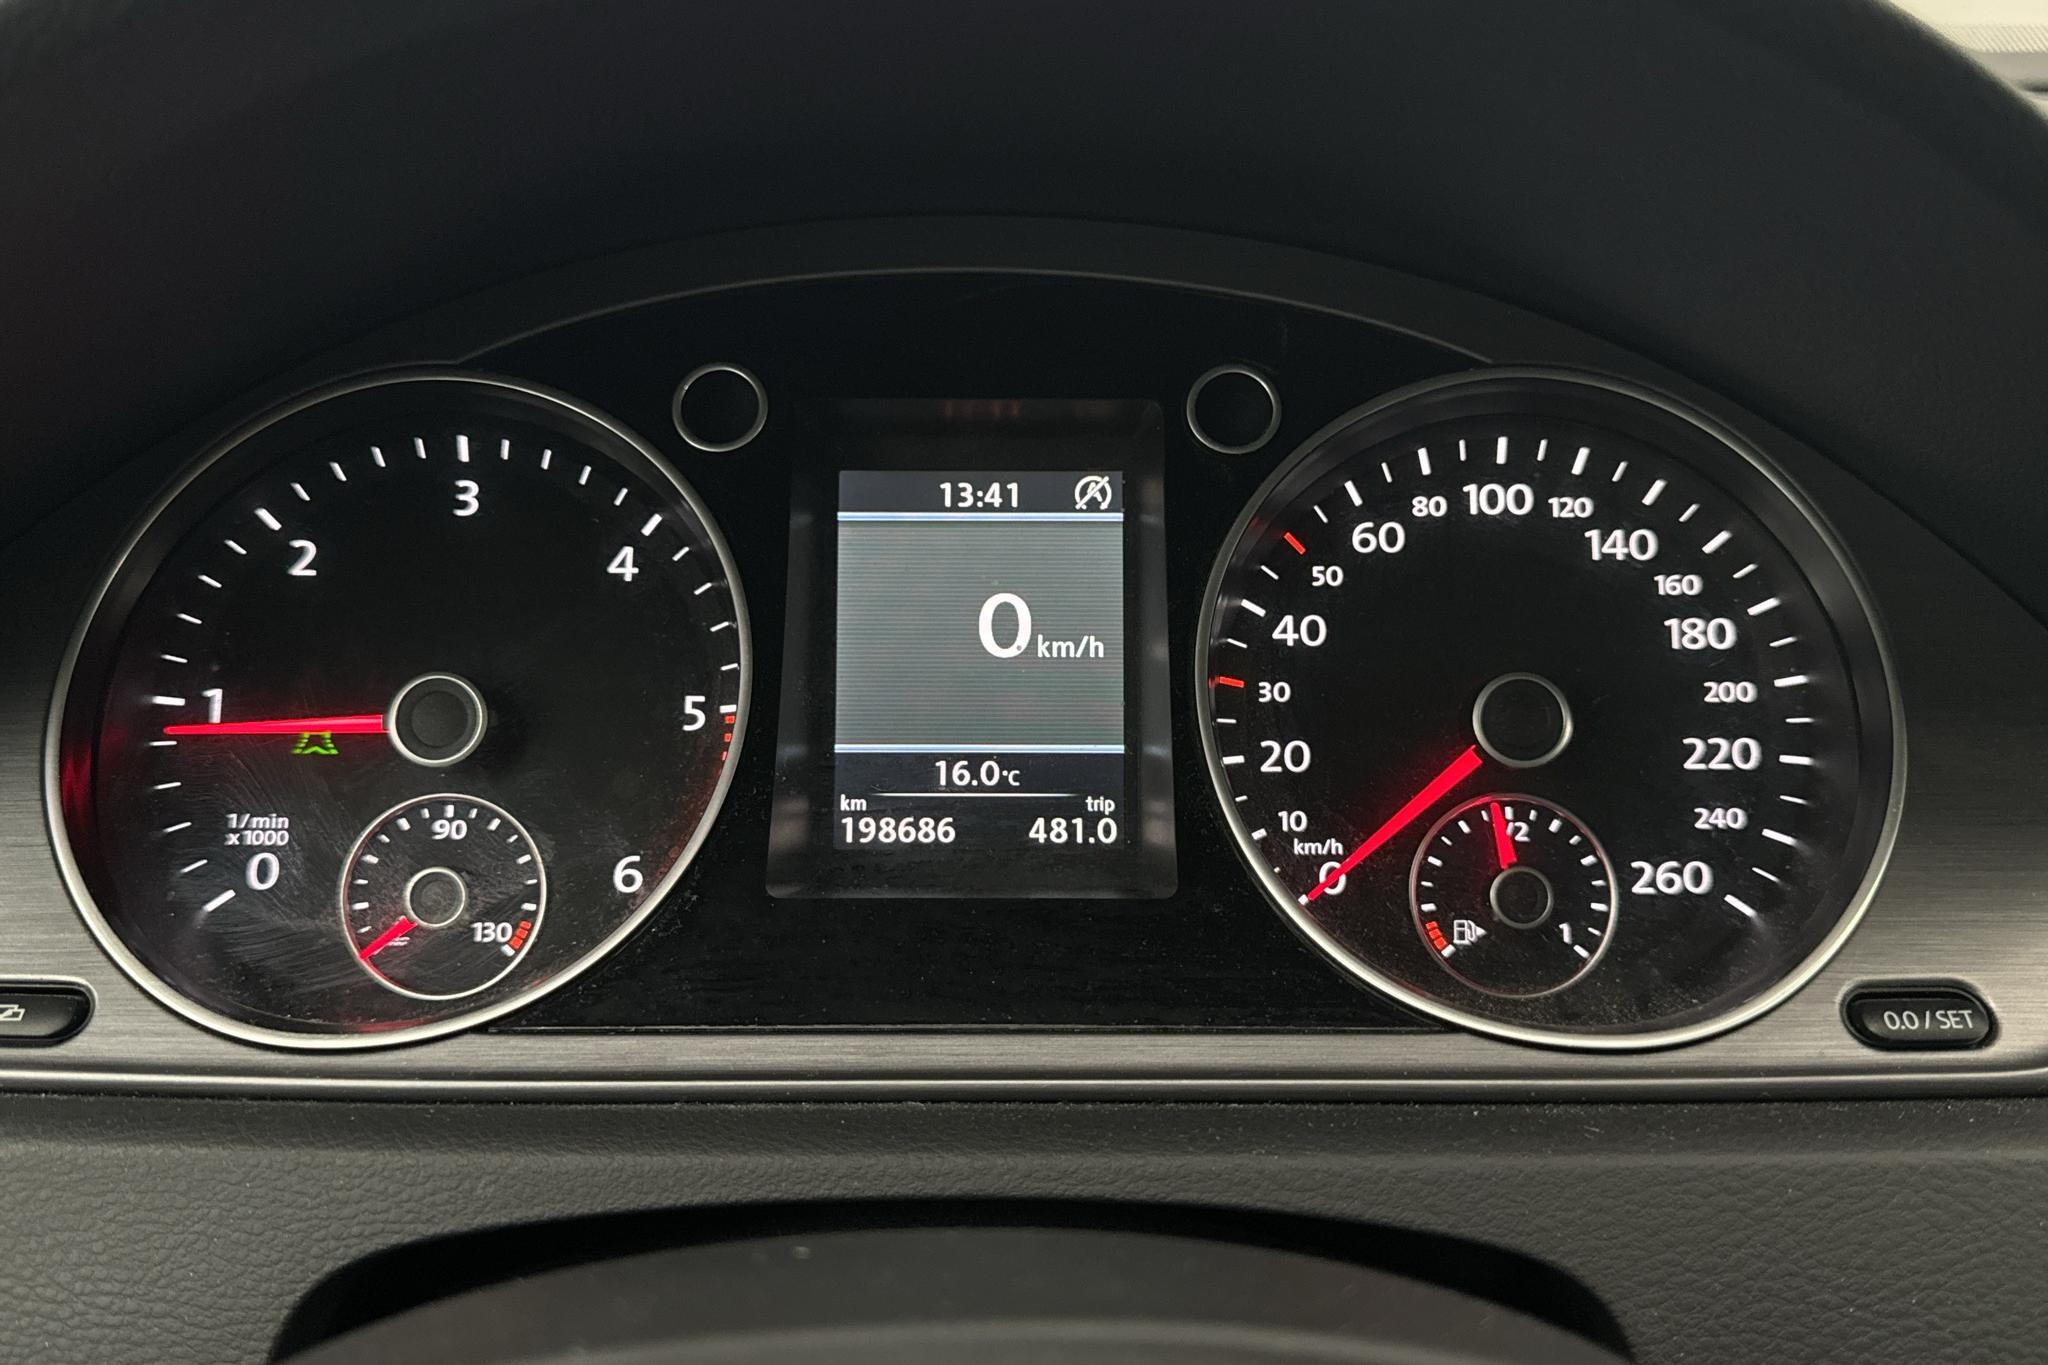 VW Passat 2.0 TDI BlueMotion Technology Variant 4Motion (170hk) - 198 680 km - Automaattinen - valkoinen - 2012